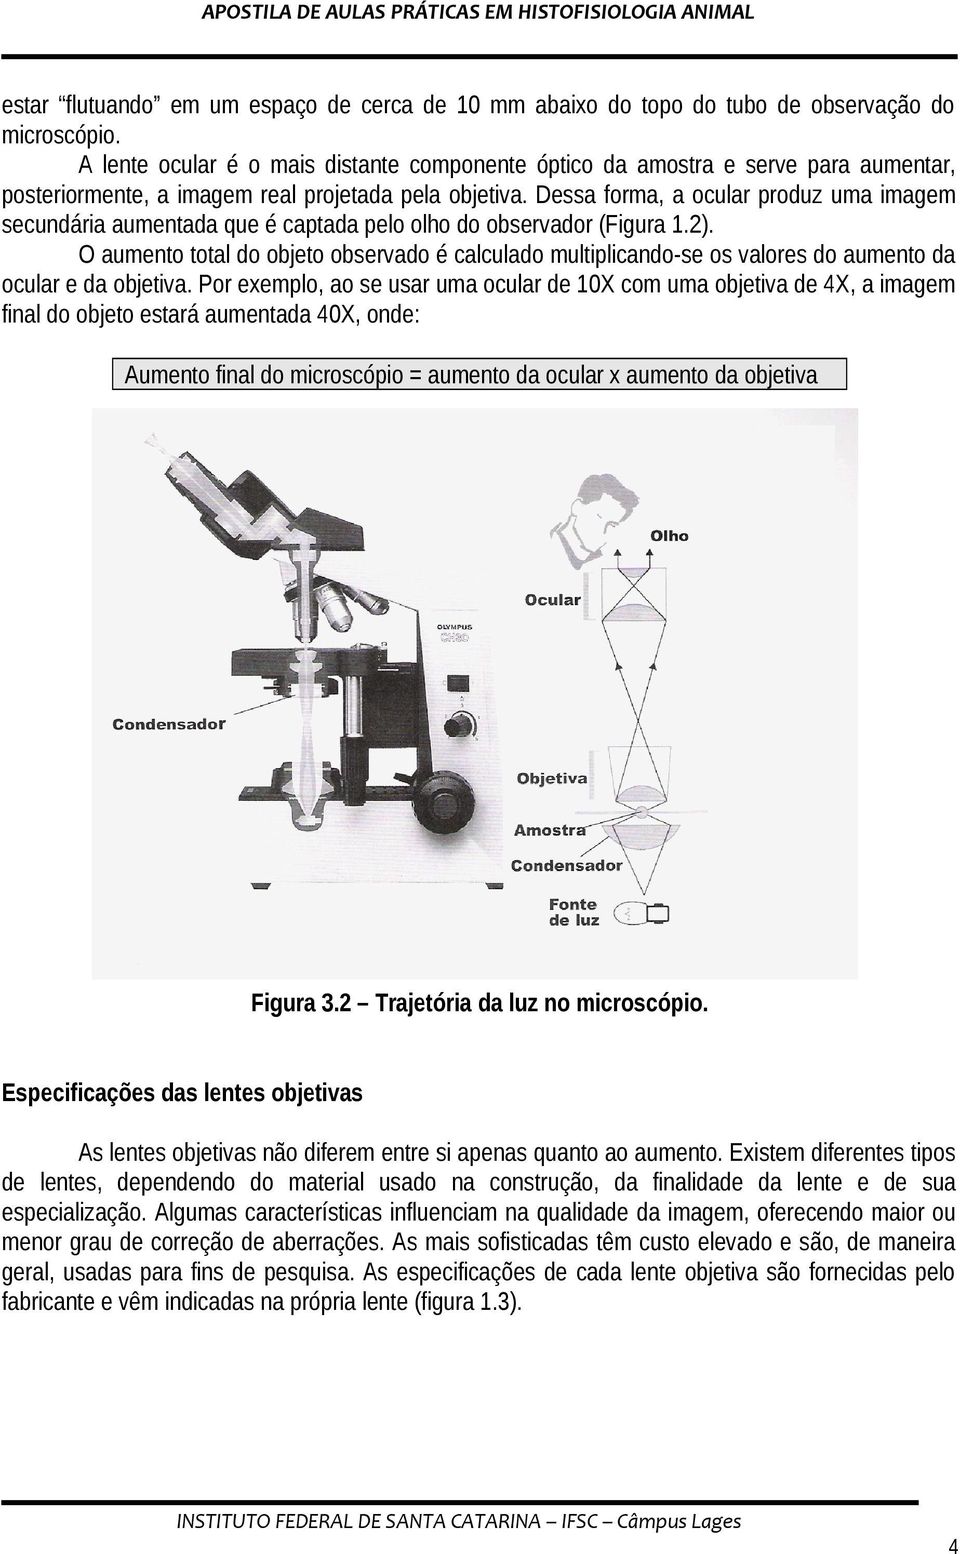 Dessa forma, a ocular produz uma imagem secundária aumentada que é captada pelo olho do observador (Figura 1.2).